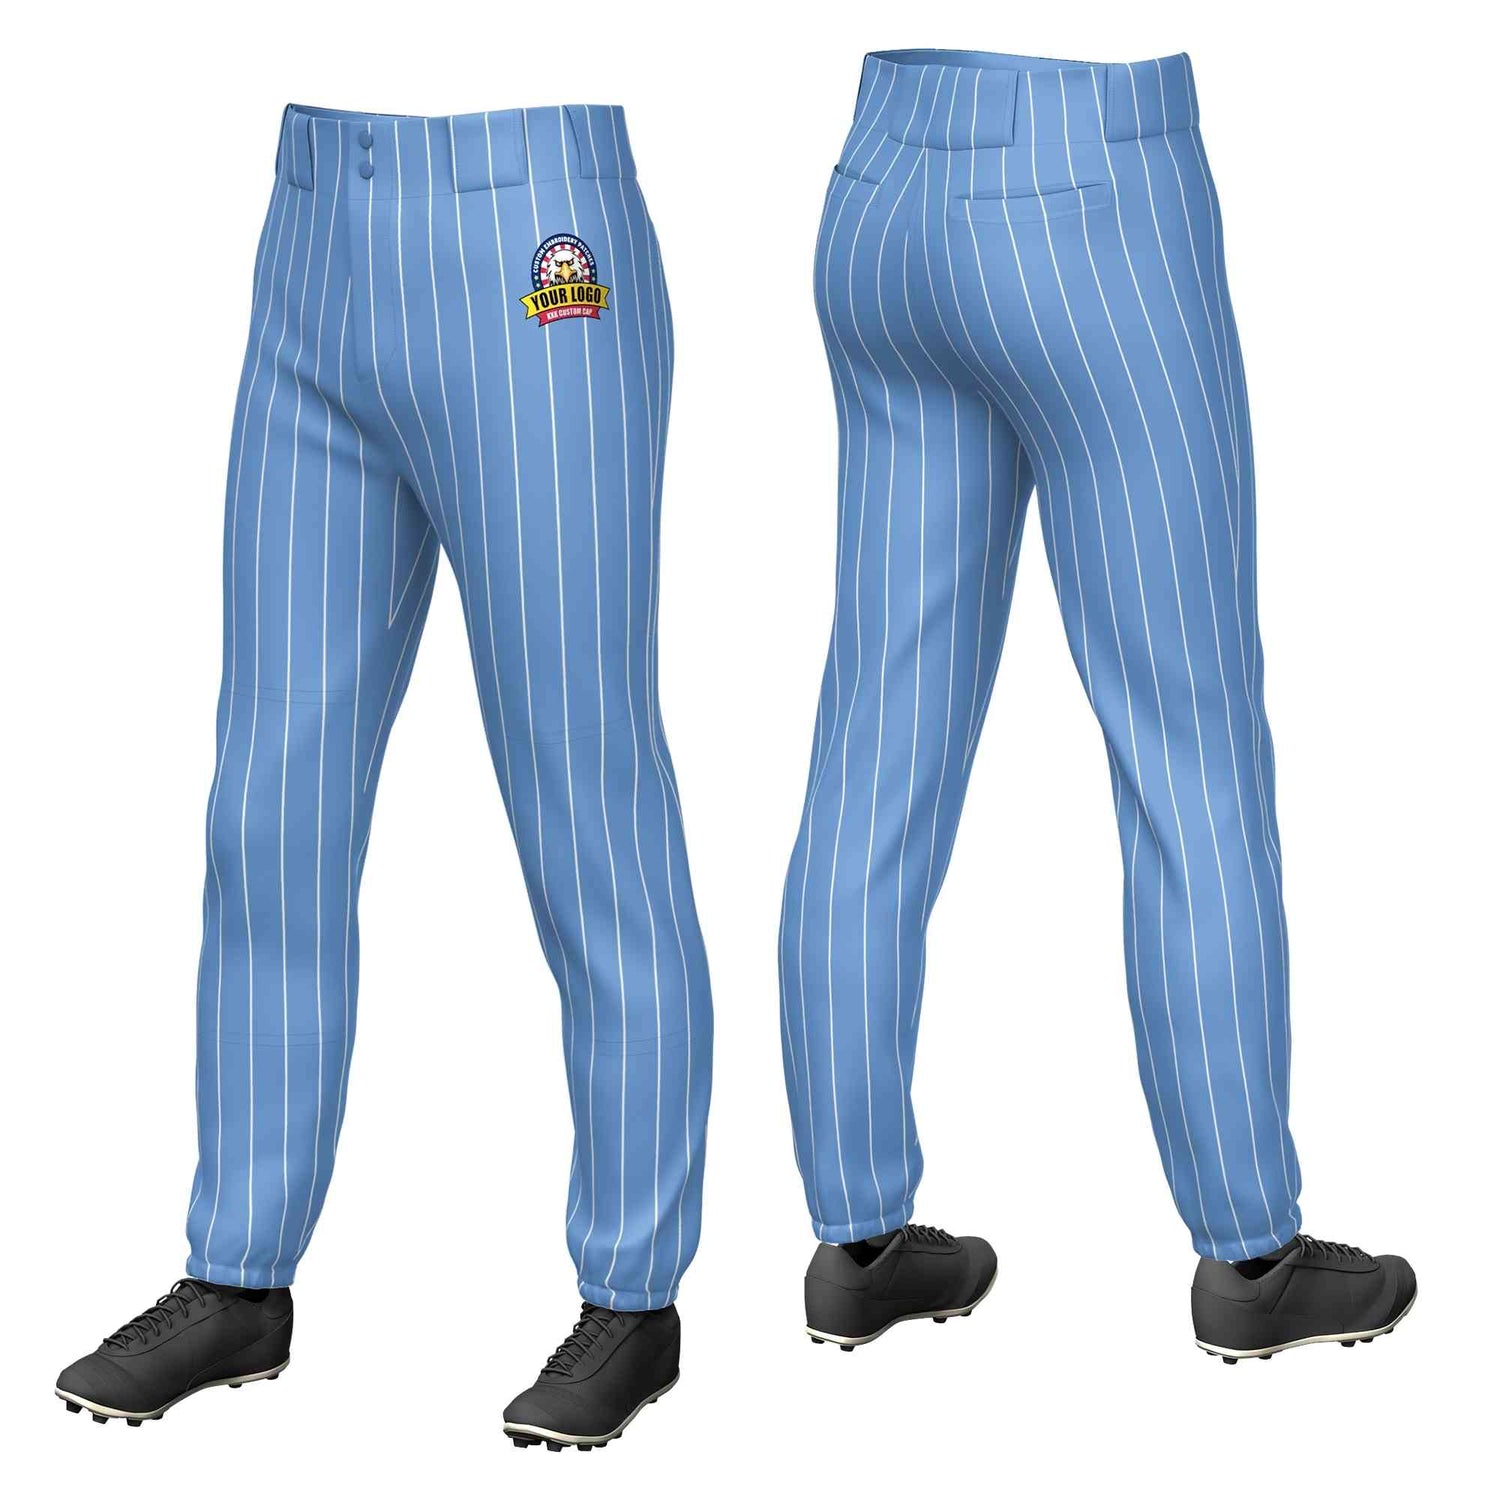 kxk custom light blue baseball pants